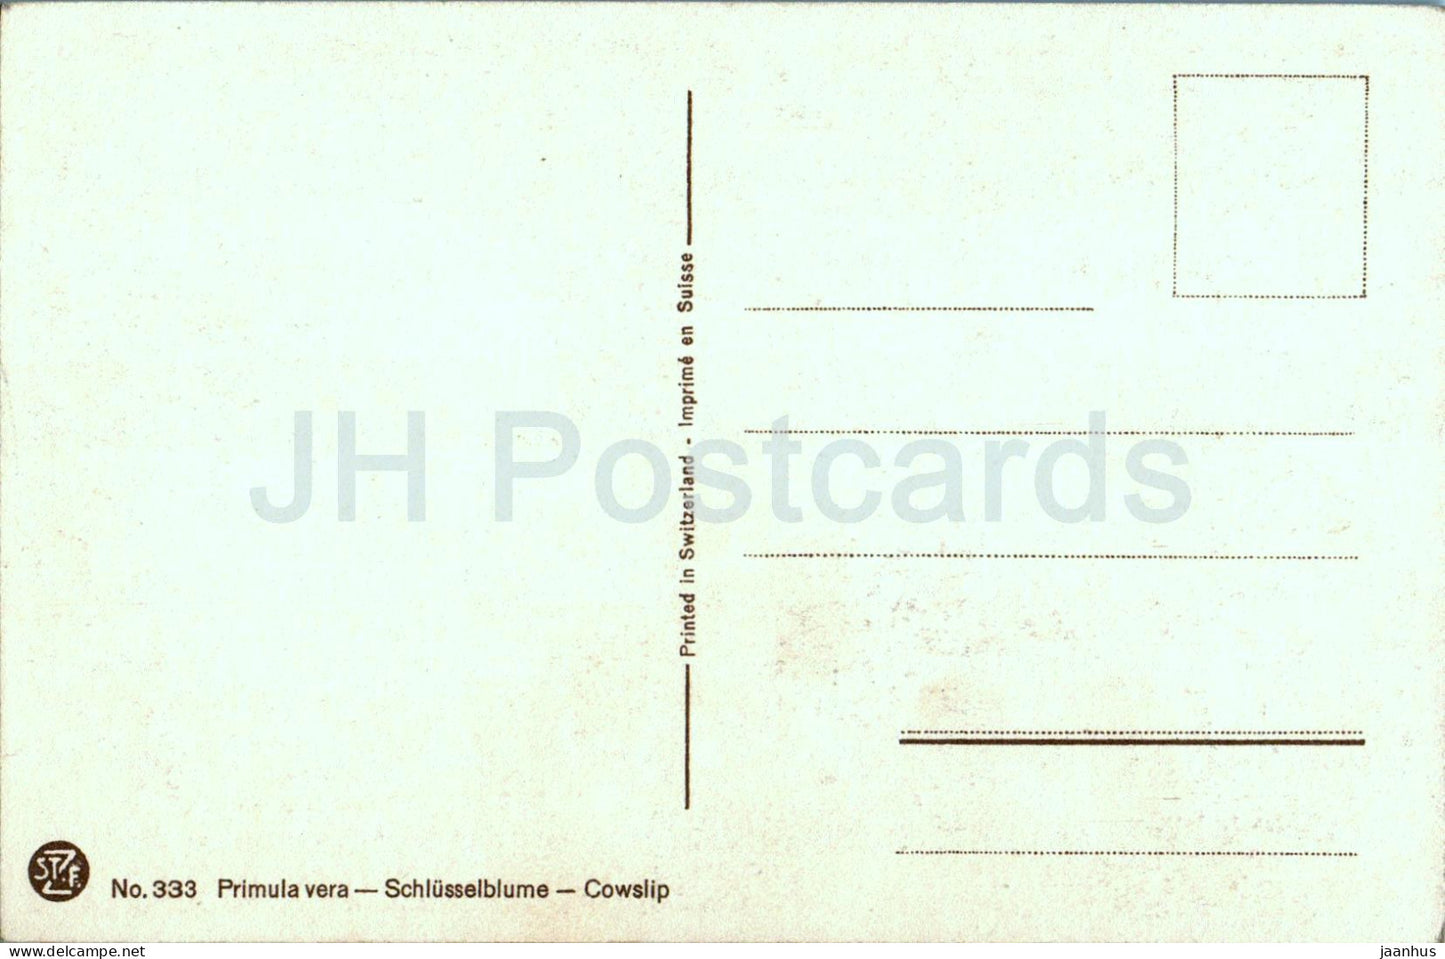 Primula vera - Schlüsselblume - Schlüsselblume - 333 - alte Postkarte - Blumen - Schweiz - unbenutzt